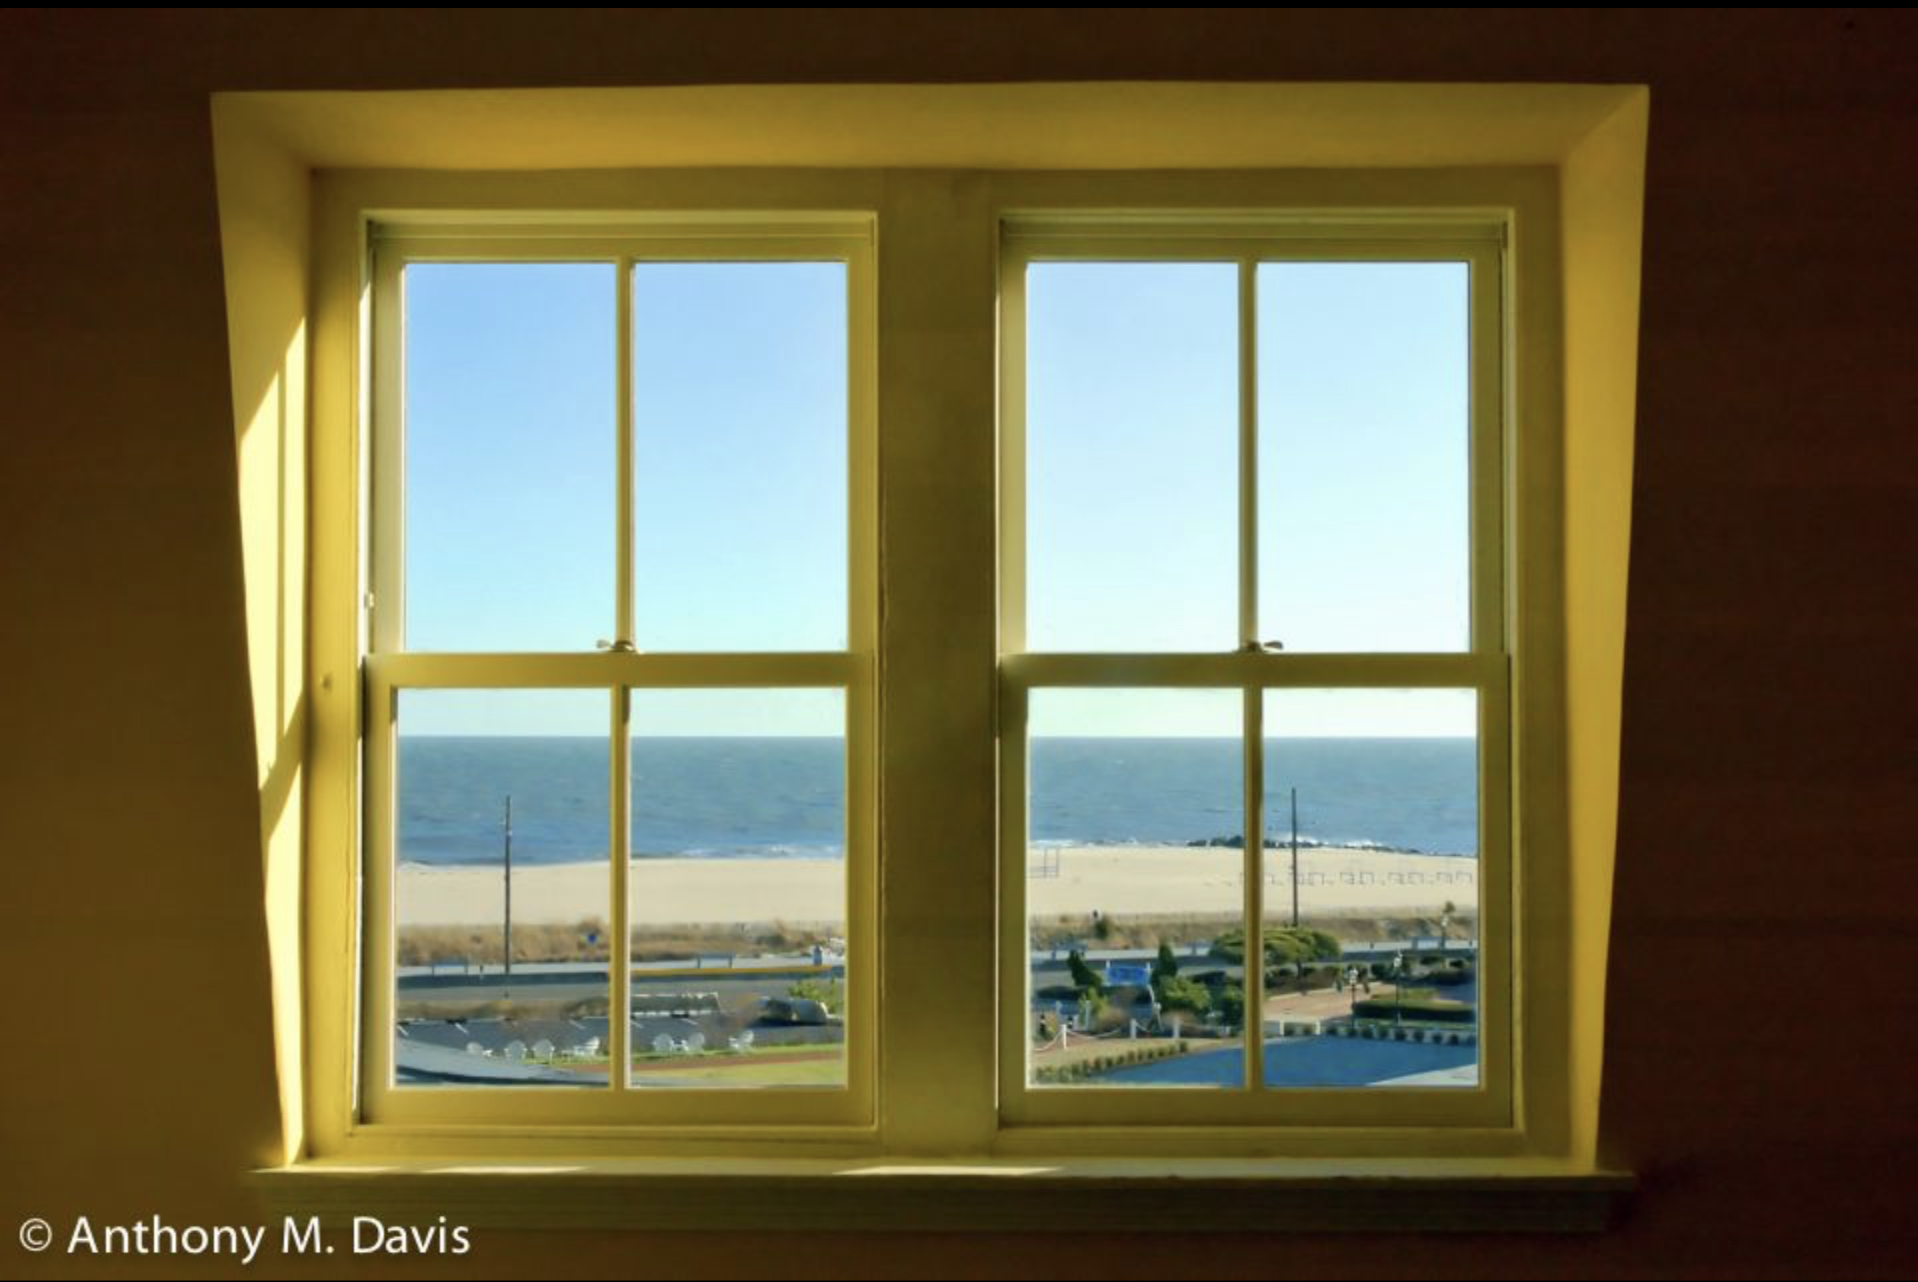 Windows facing the ocean